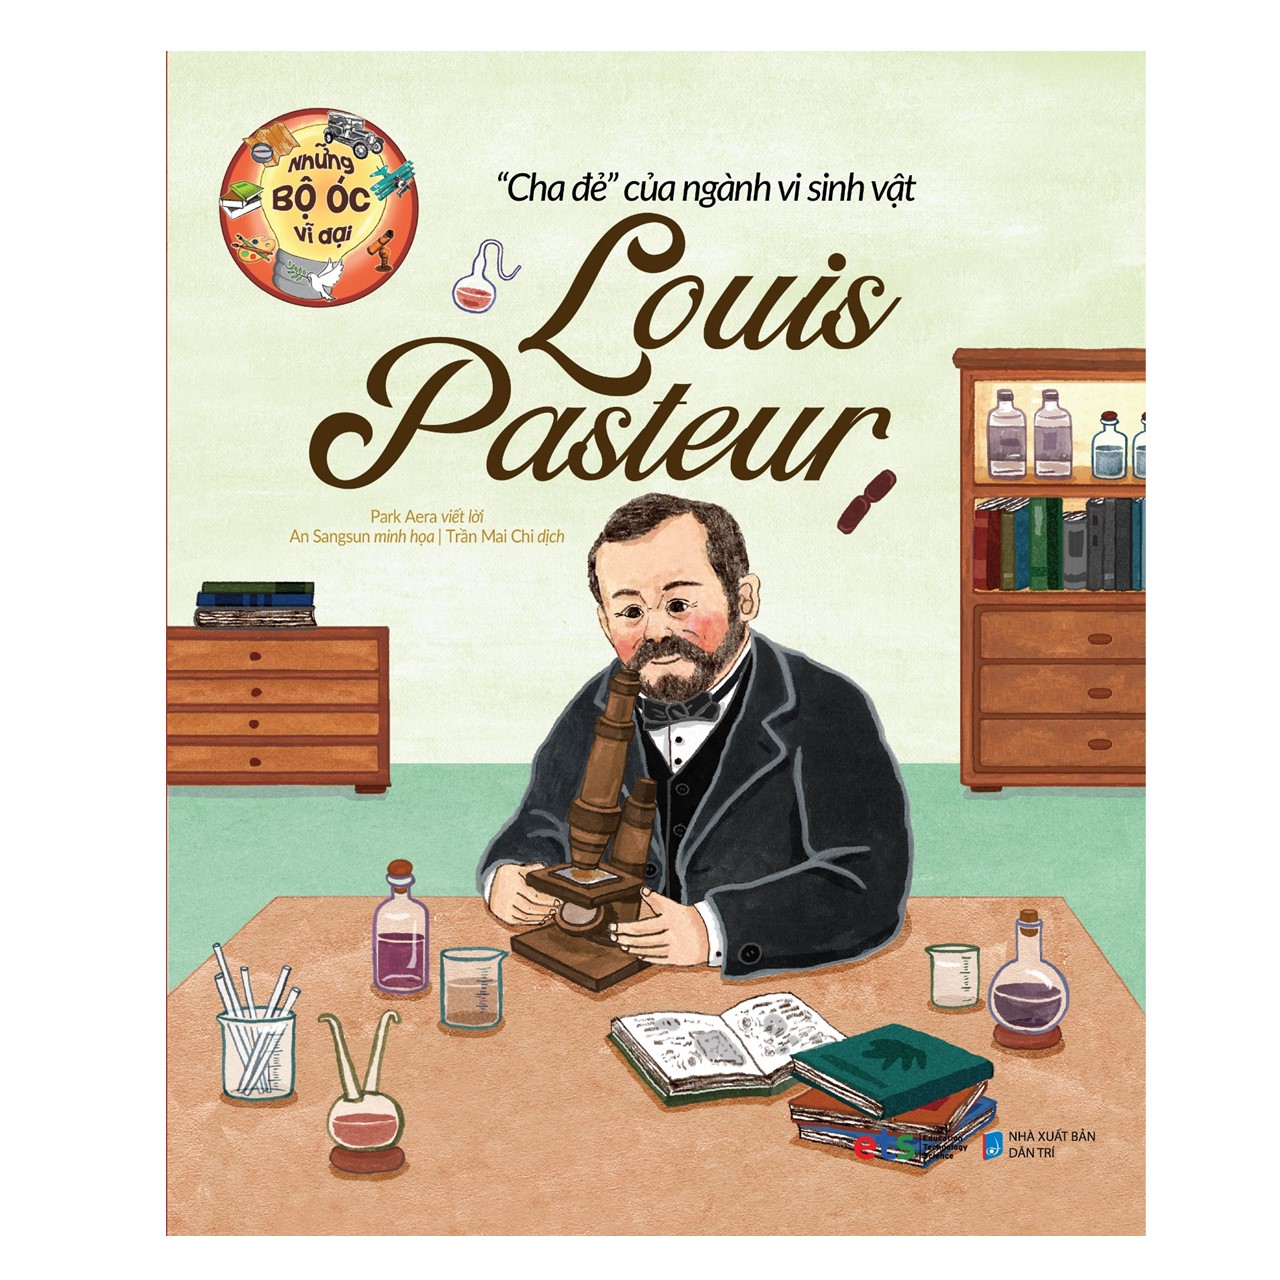 Những Bộ Óc Vĩ Đại: “Cha Đẻ” Của Ngành Vi Sinh Vật Louis Pasteur